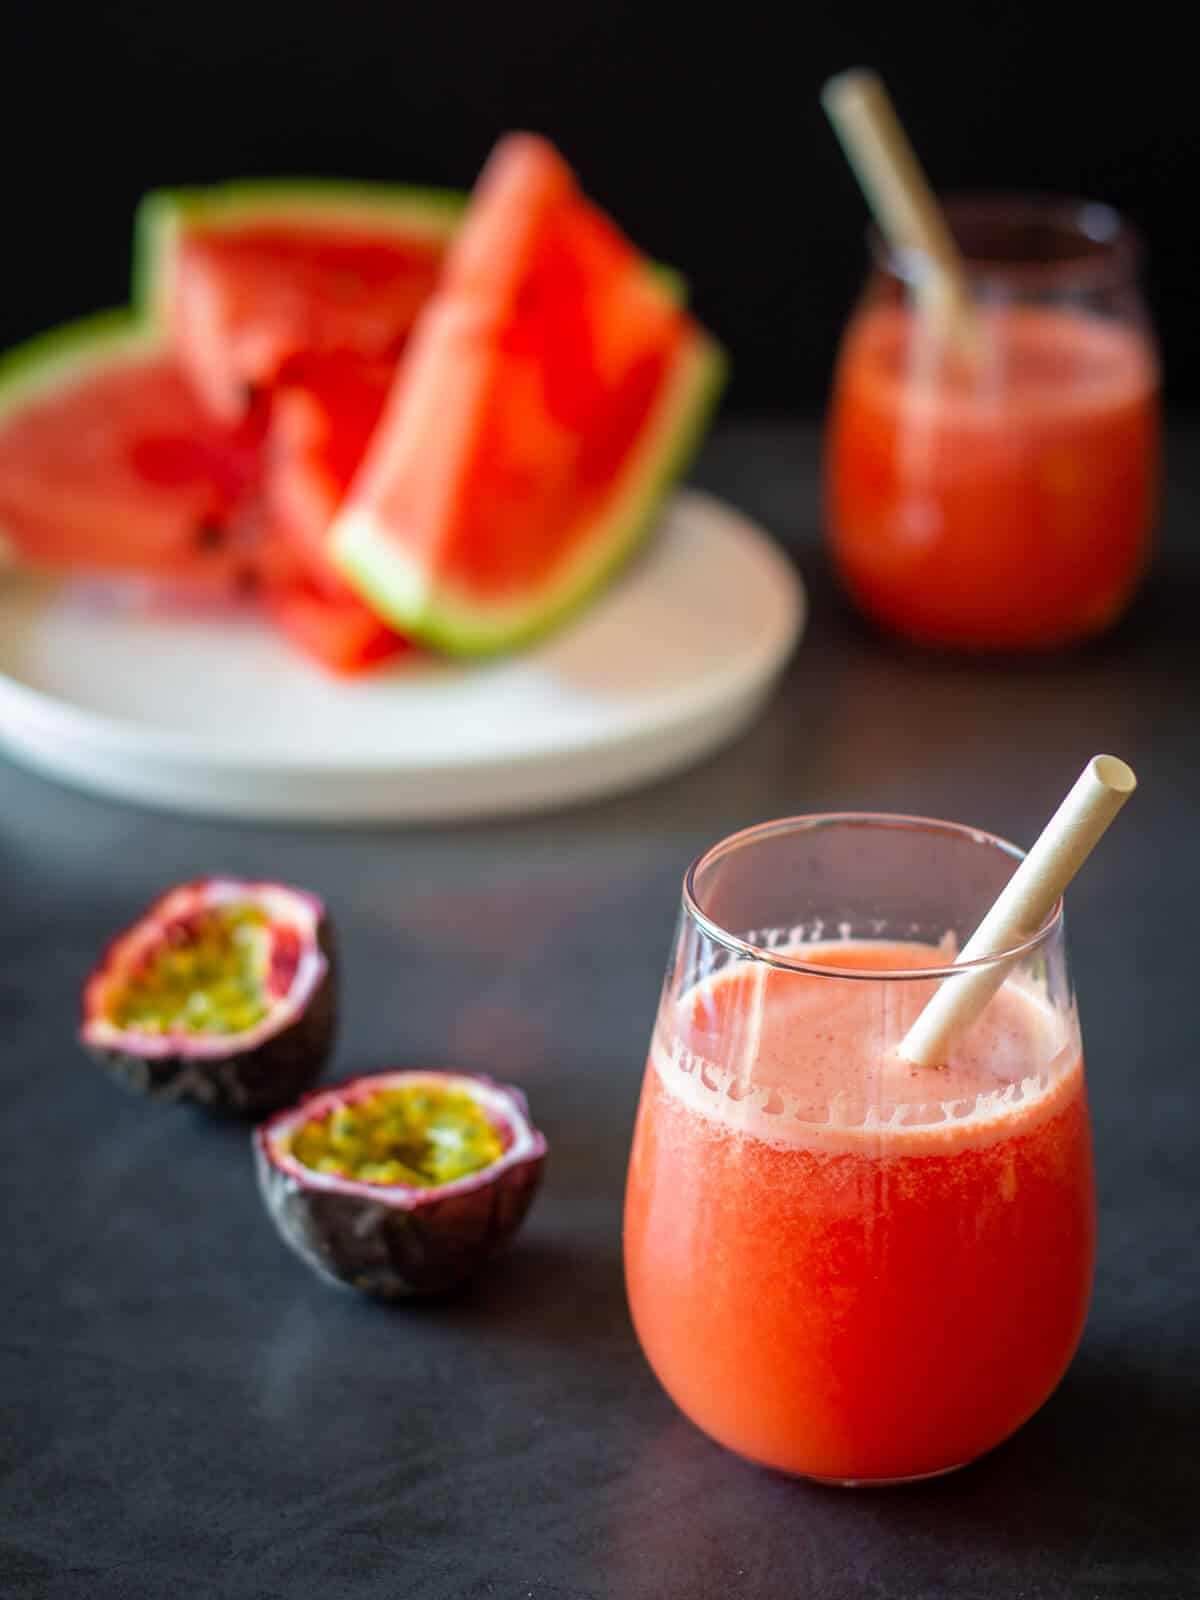 Drink fresh juice like watermelon